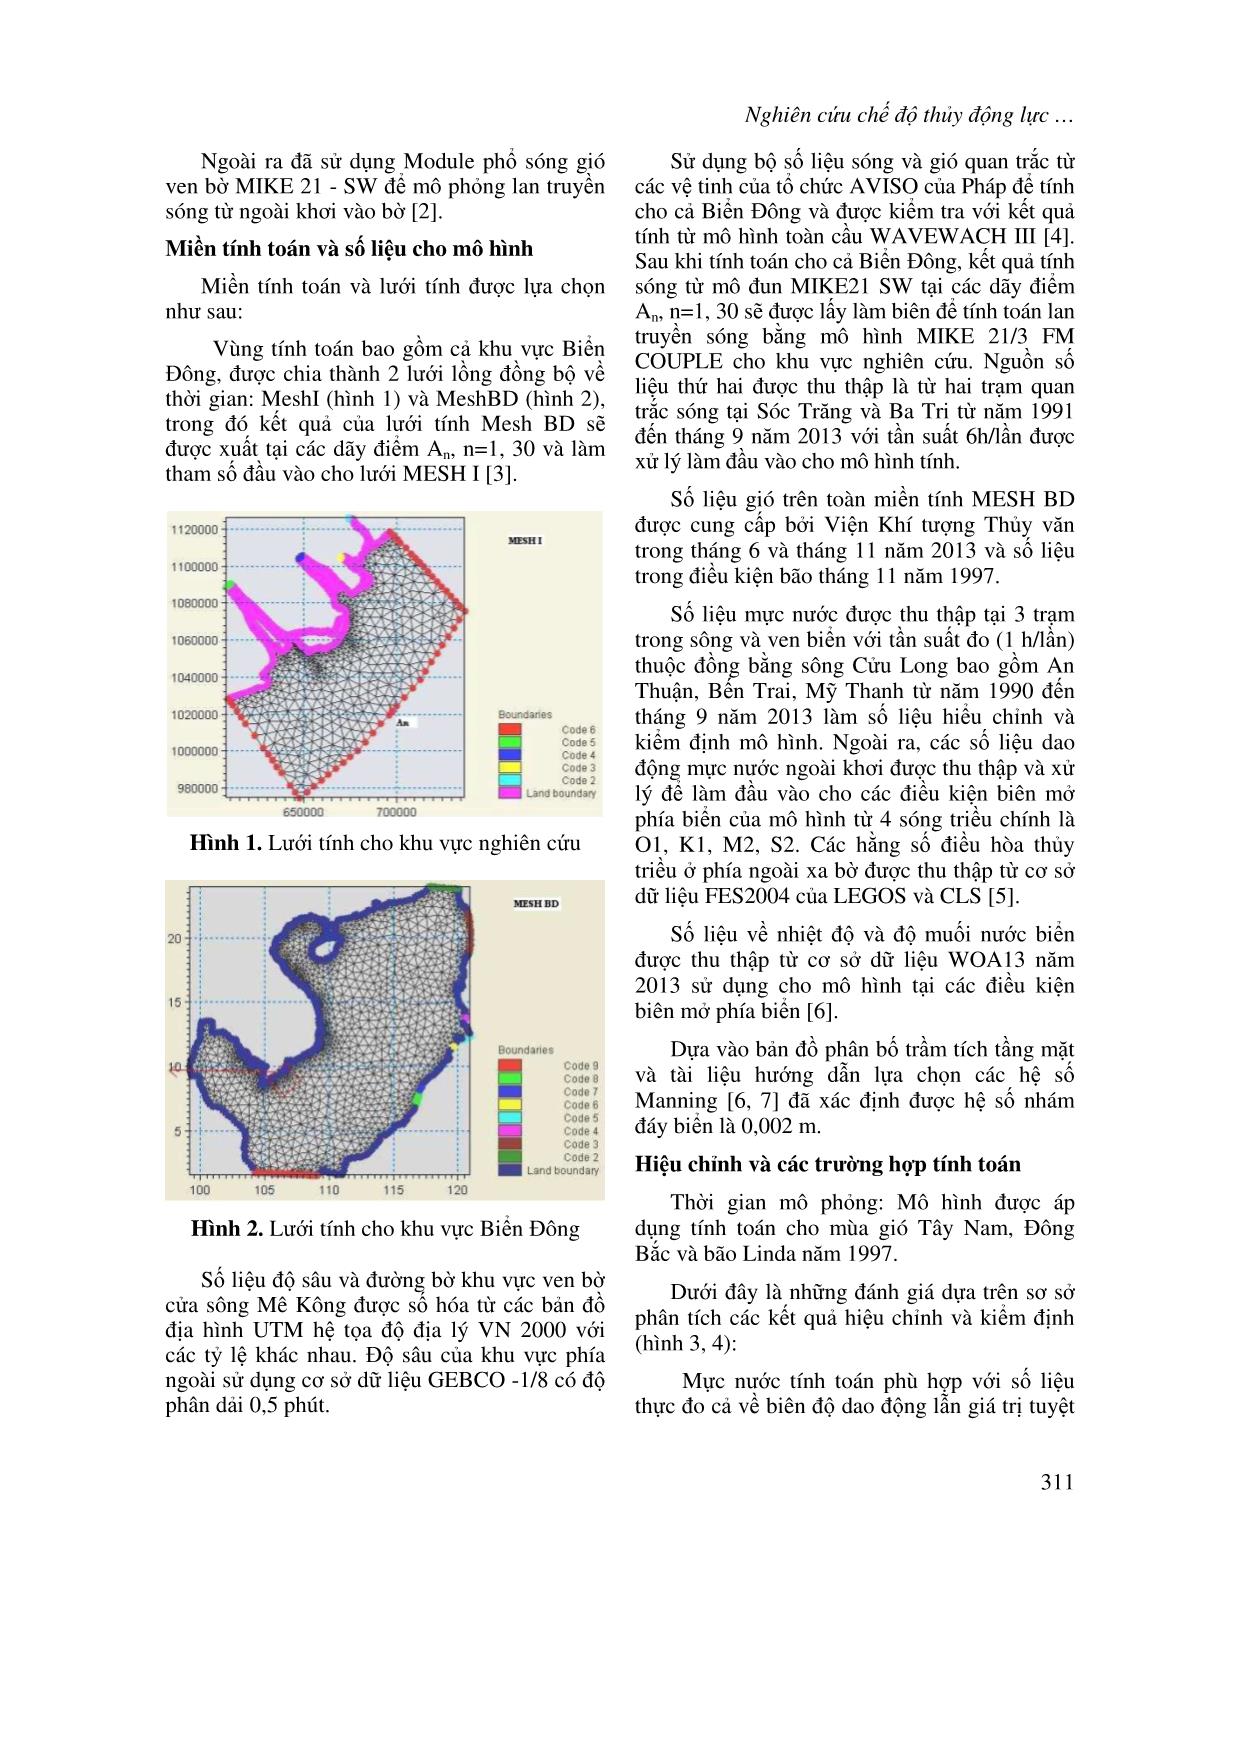 Nghiên cứu chế độ thủy động lực tại vùng biển ven bờ cửa sông Mê Kông trang 2